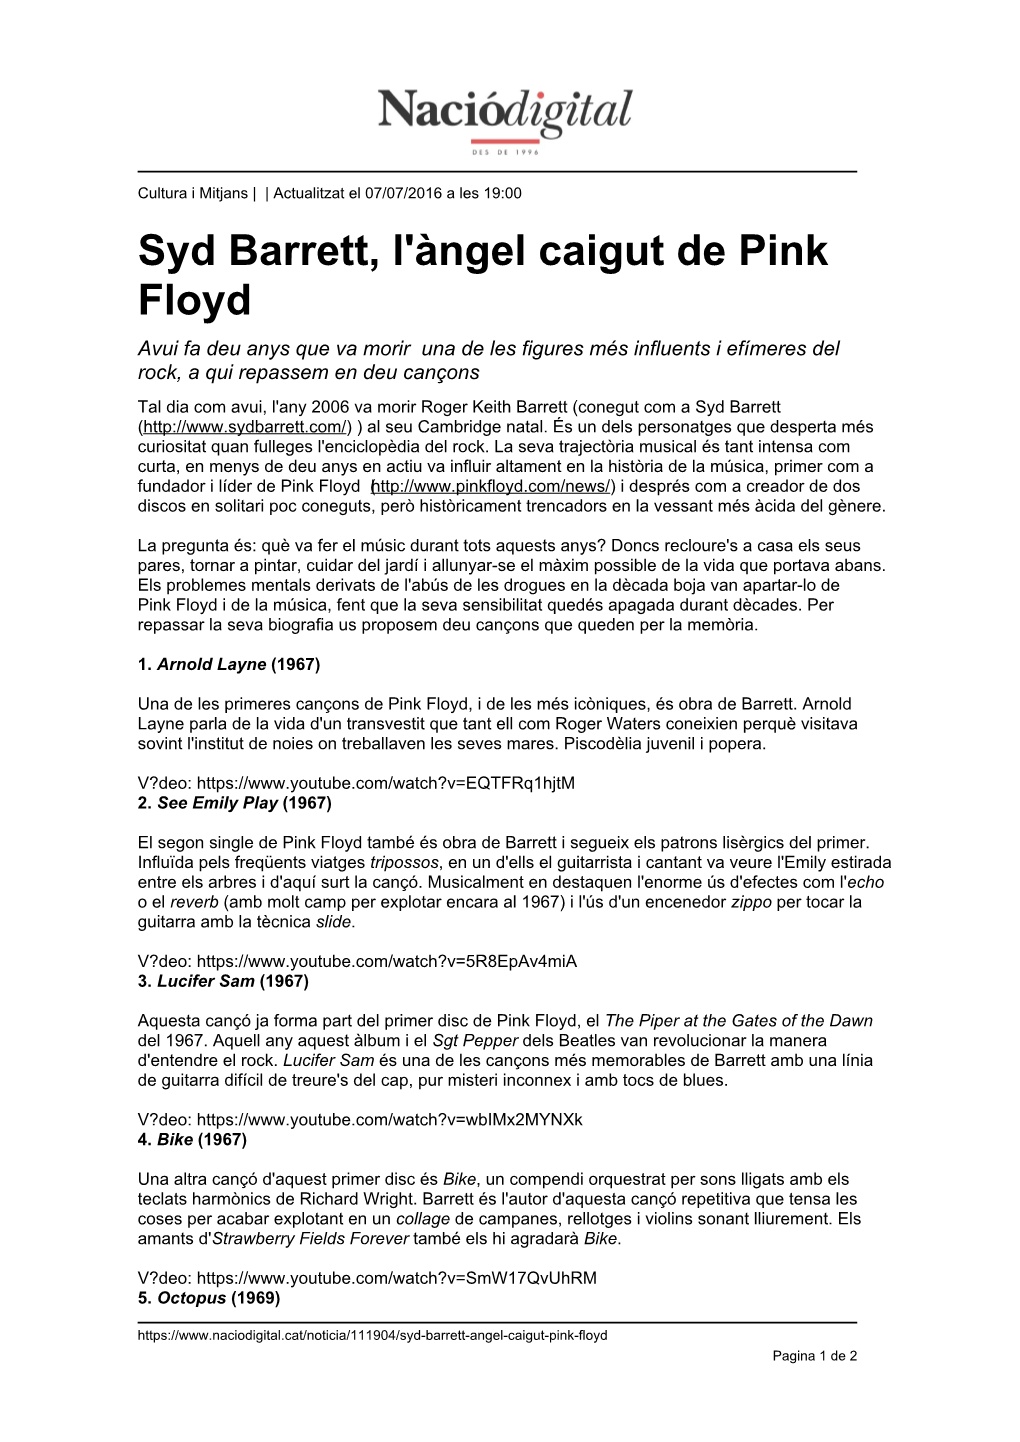 Syd Barrett, L'àngel Caigut De Pink Floyd